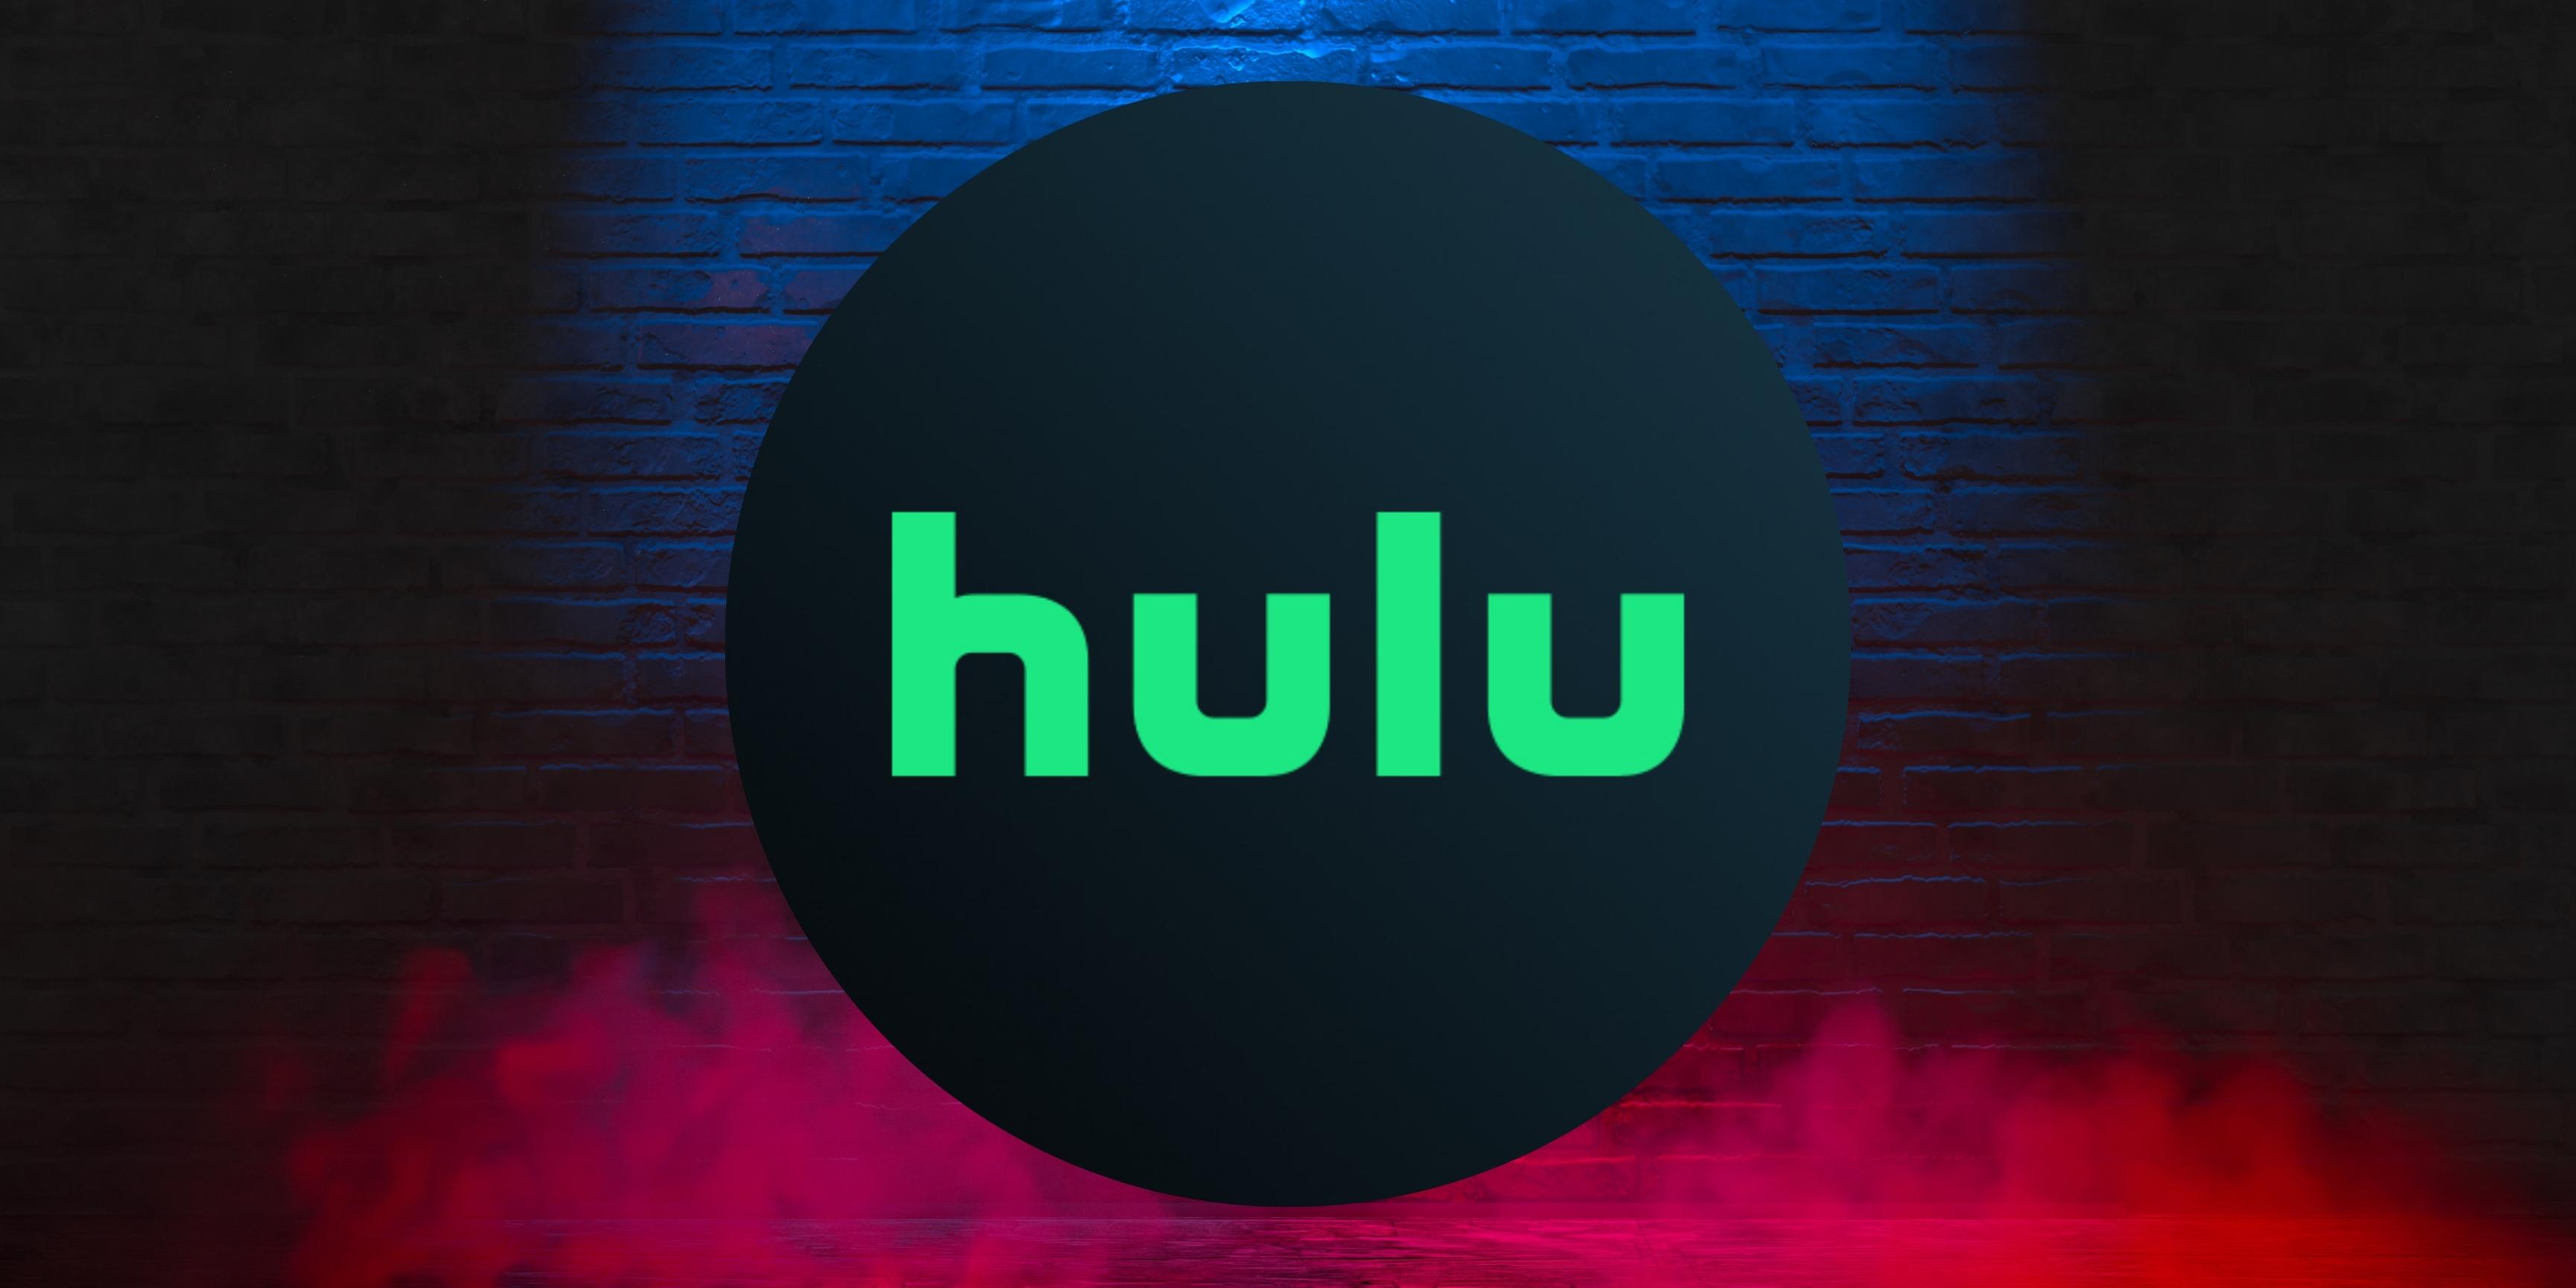 Hulu United States (USA) | 6 Months Warranty